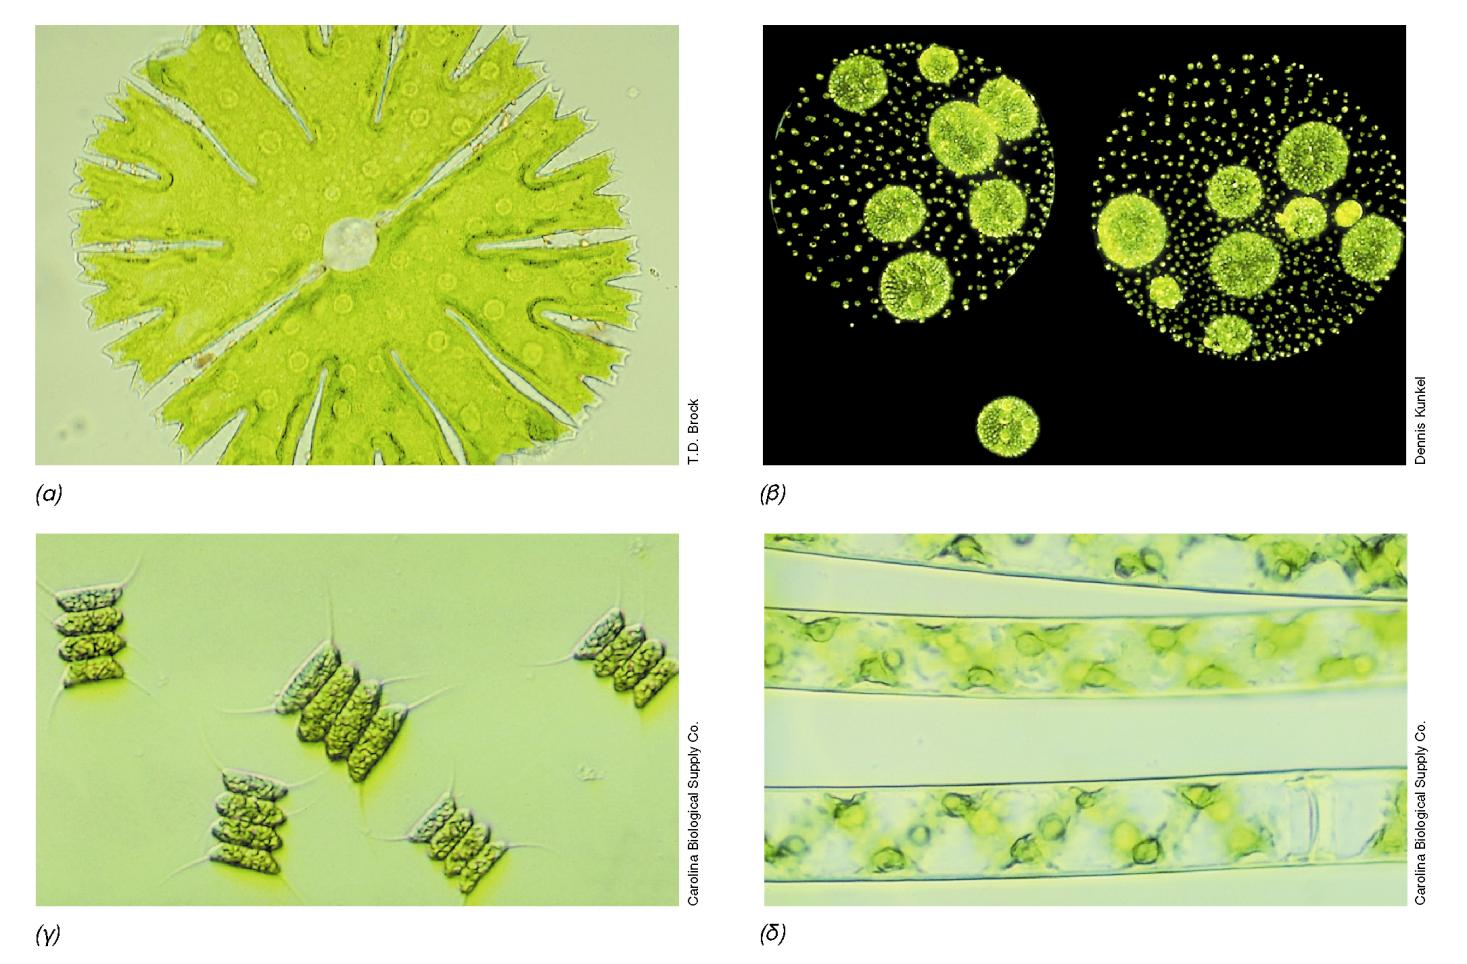 ΦΩΤΟΓΡΑΦΙΕΣ ΠΡΑΣΙΝΩΝ ΦΥΚΩΝ Εικόνα 14.26: Φωτογραφίες αντιπροσωπευτικών πράσινων φυκών από οπτικό μικροσκόπιο, (α) Micrastenas. Ένα κύτταρο.